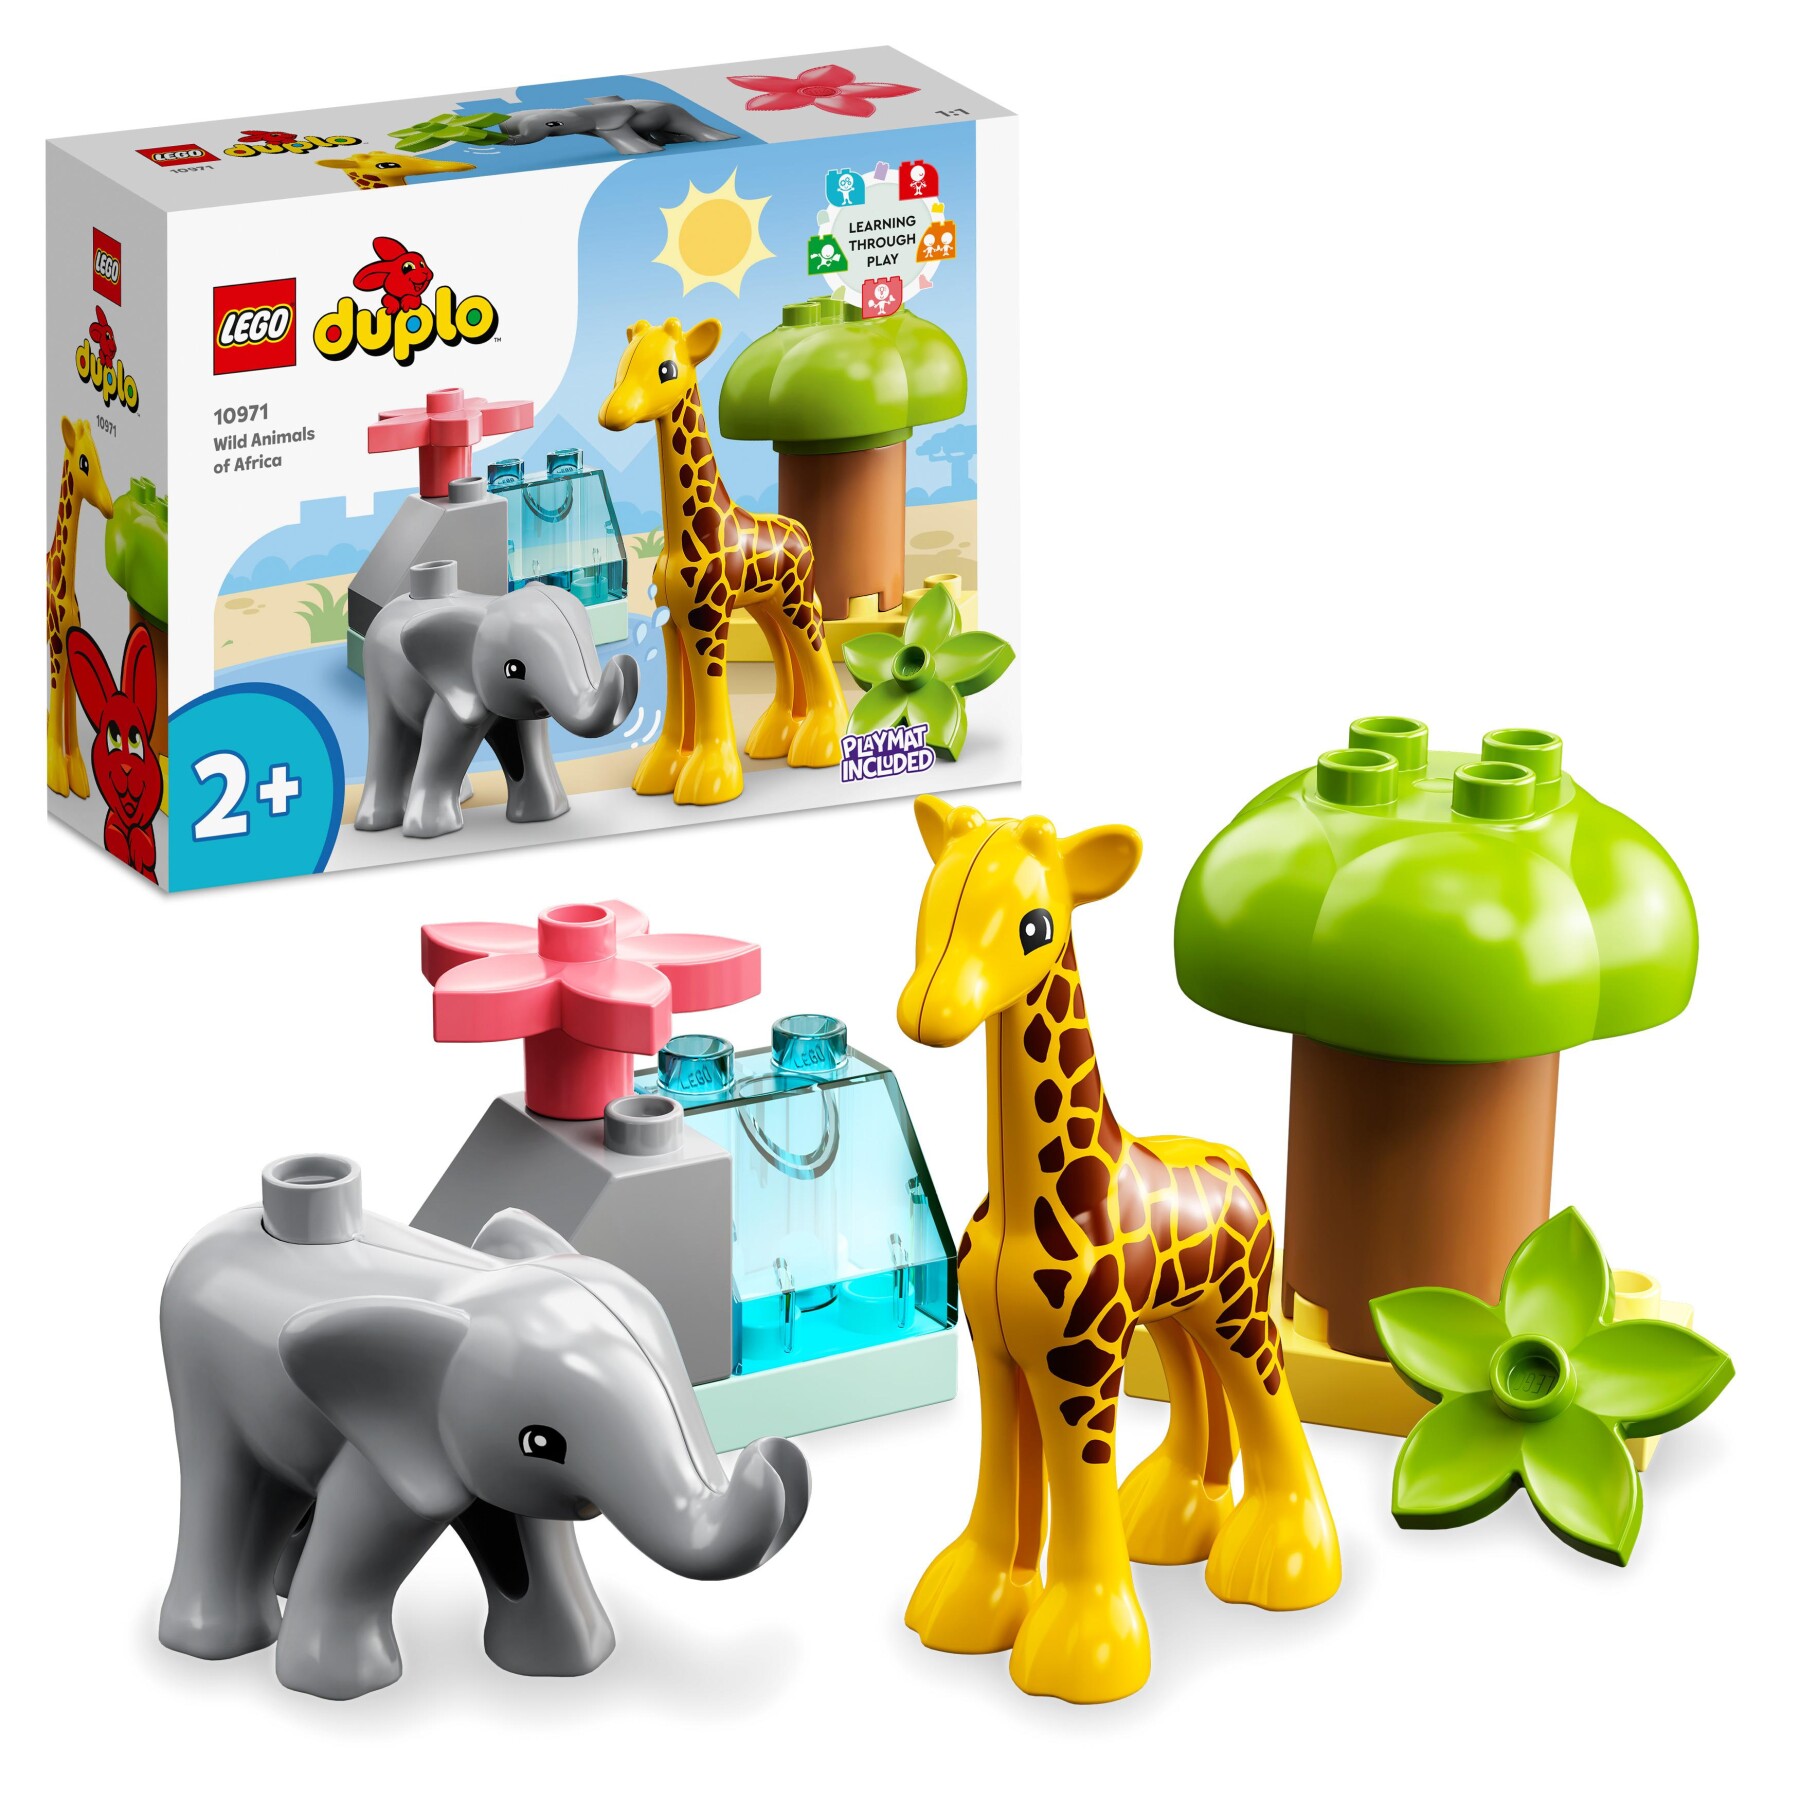 Lego duplo 10971 animali dell’africa - impara e gioca con gli animali - LEGO DUPLO